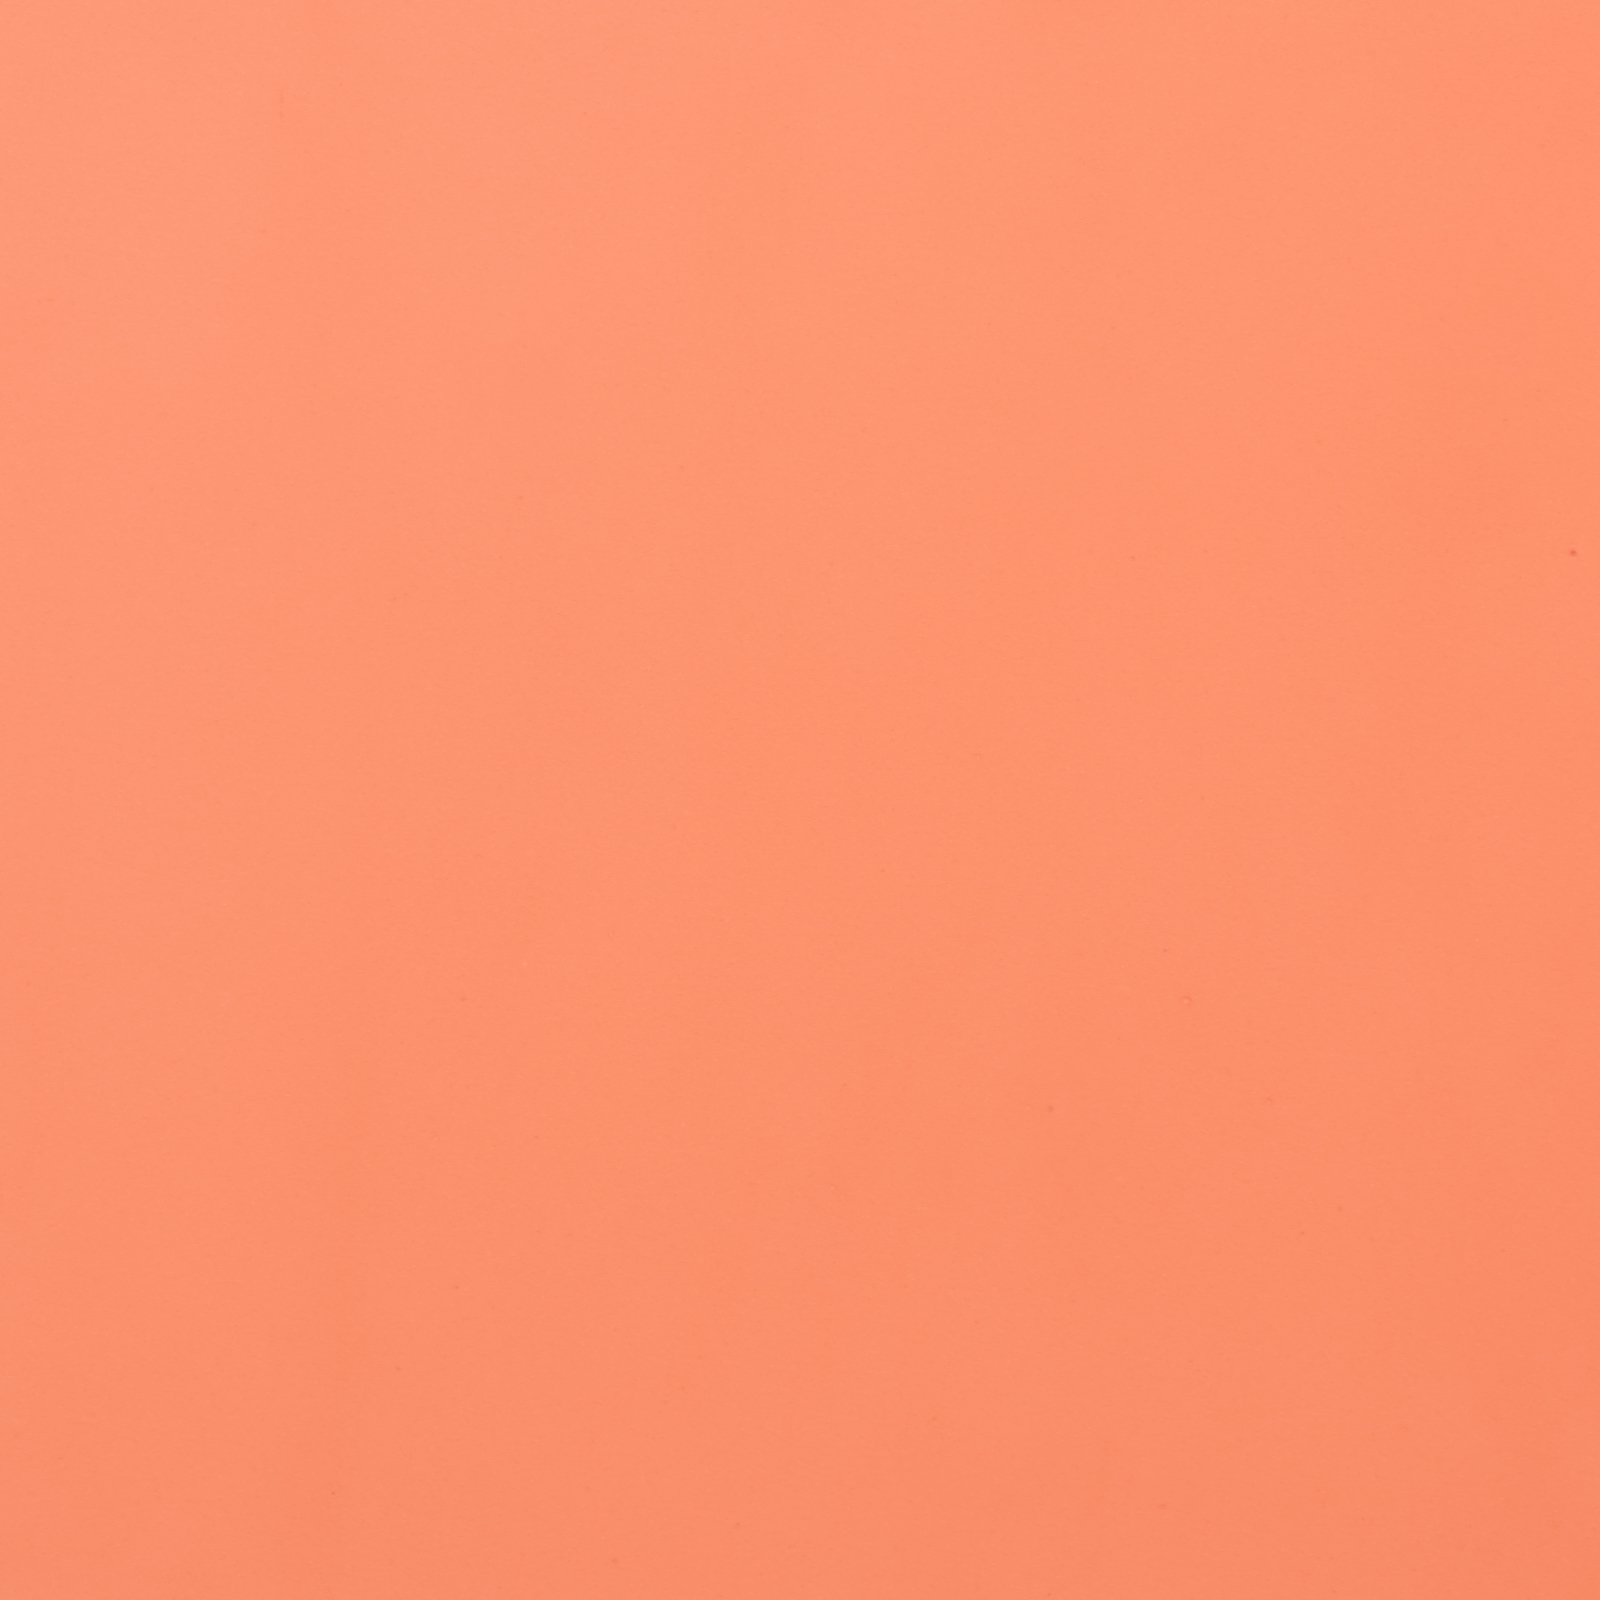 Персиковый цвет однотонный. Светло коралловый цвет. Бежево-оранжевый цвет. Бледно коралловый.